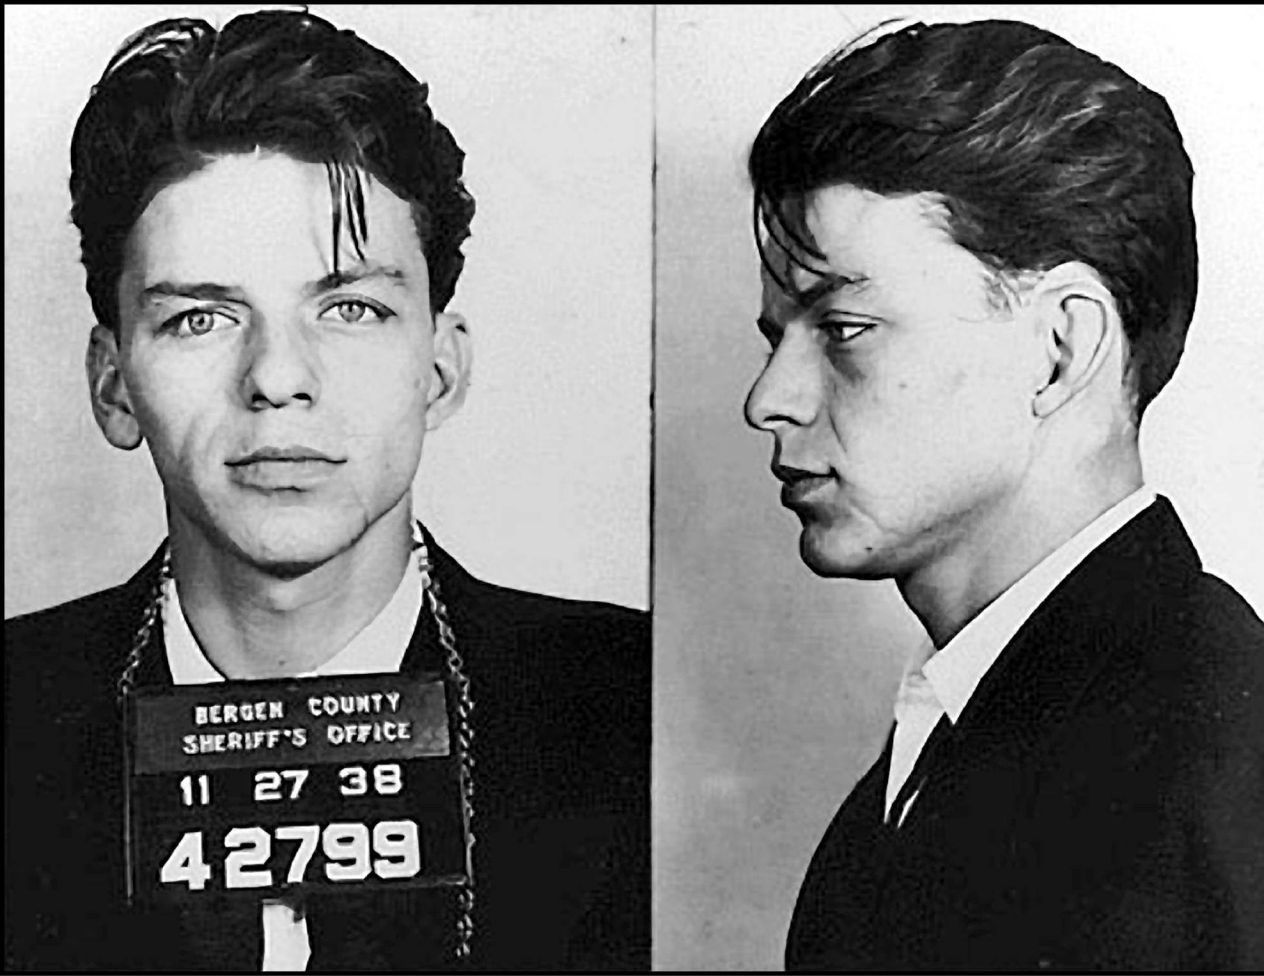 1938 wurde der damals junge Sänger Frank Sinatra verhaftet. Ihm wurde vorgeworfen, dass er eine verheiratete Frau verführen wollte.